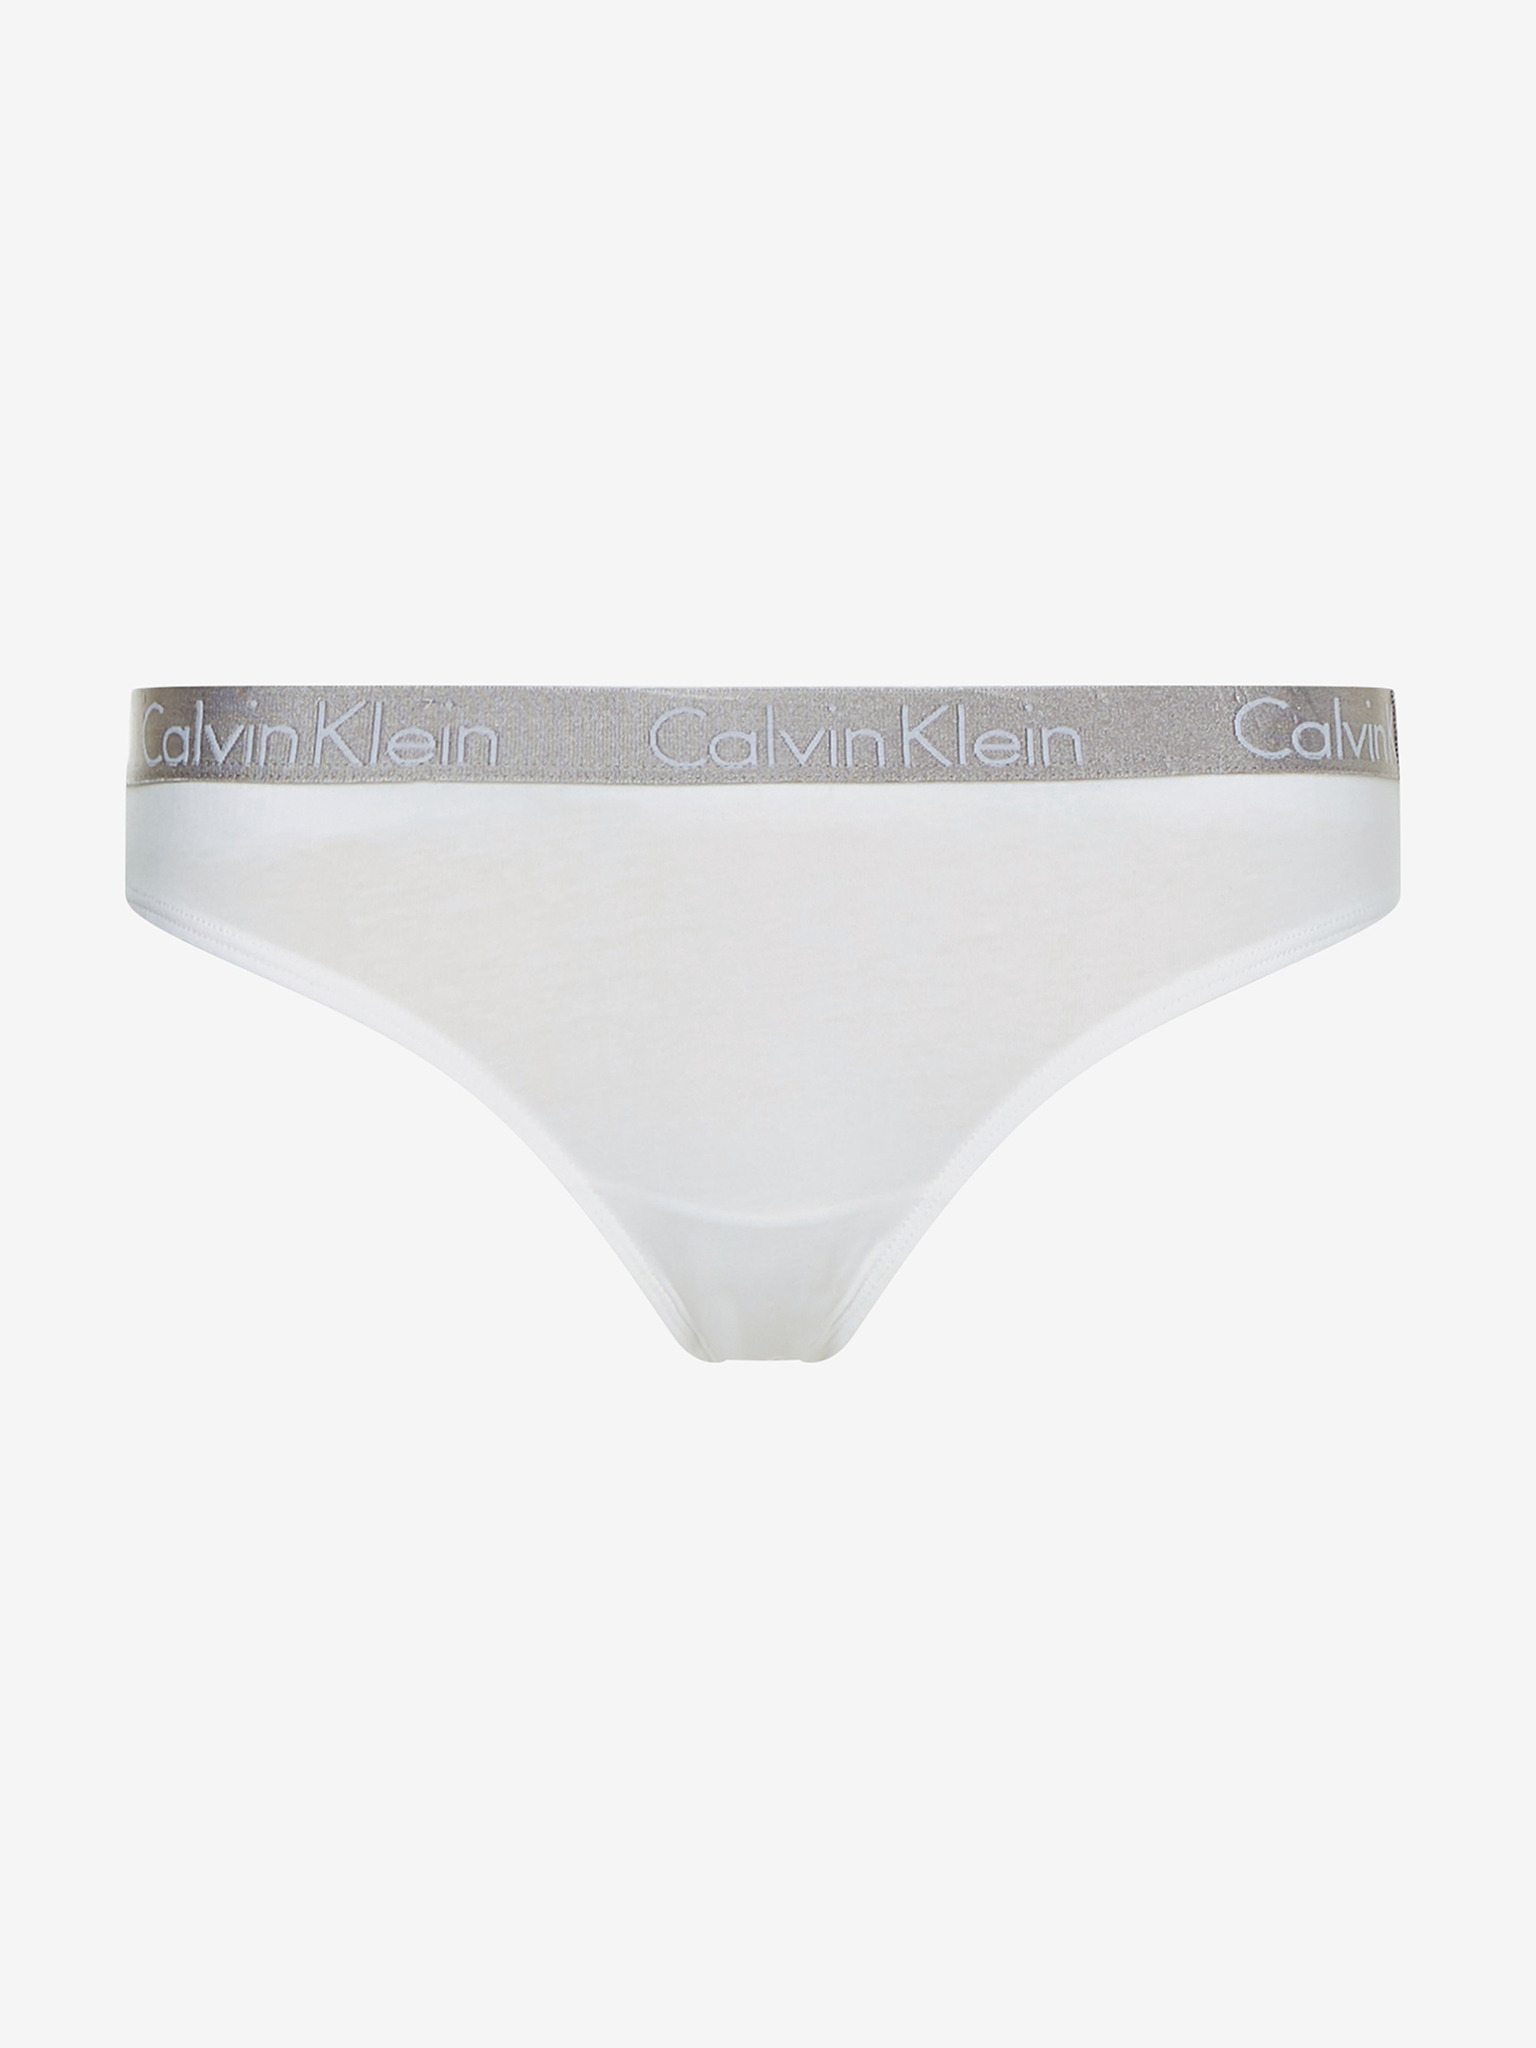 Calvin Klein underwear, bras, briefs and thongs at HerRoom